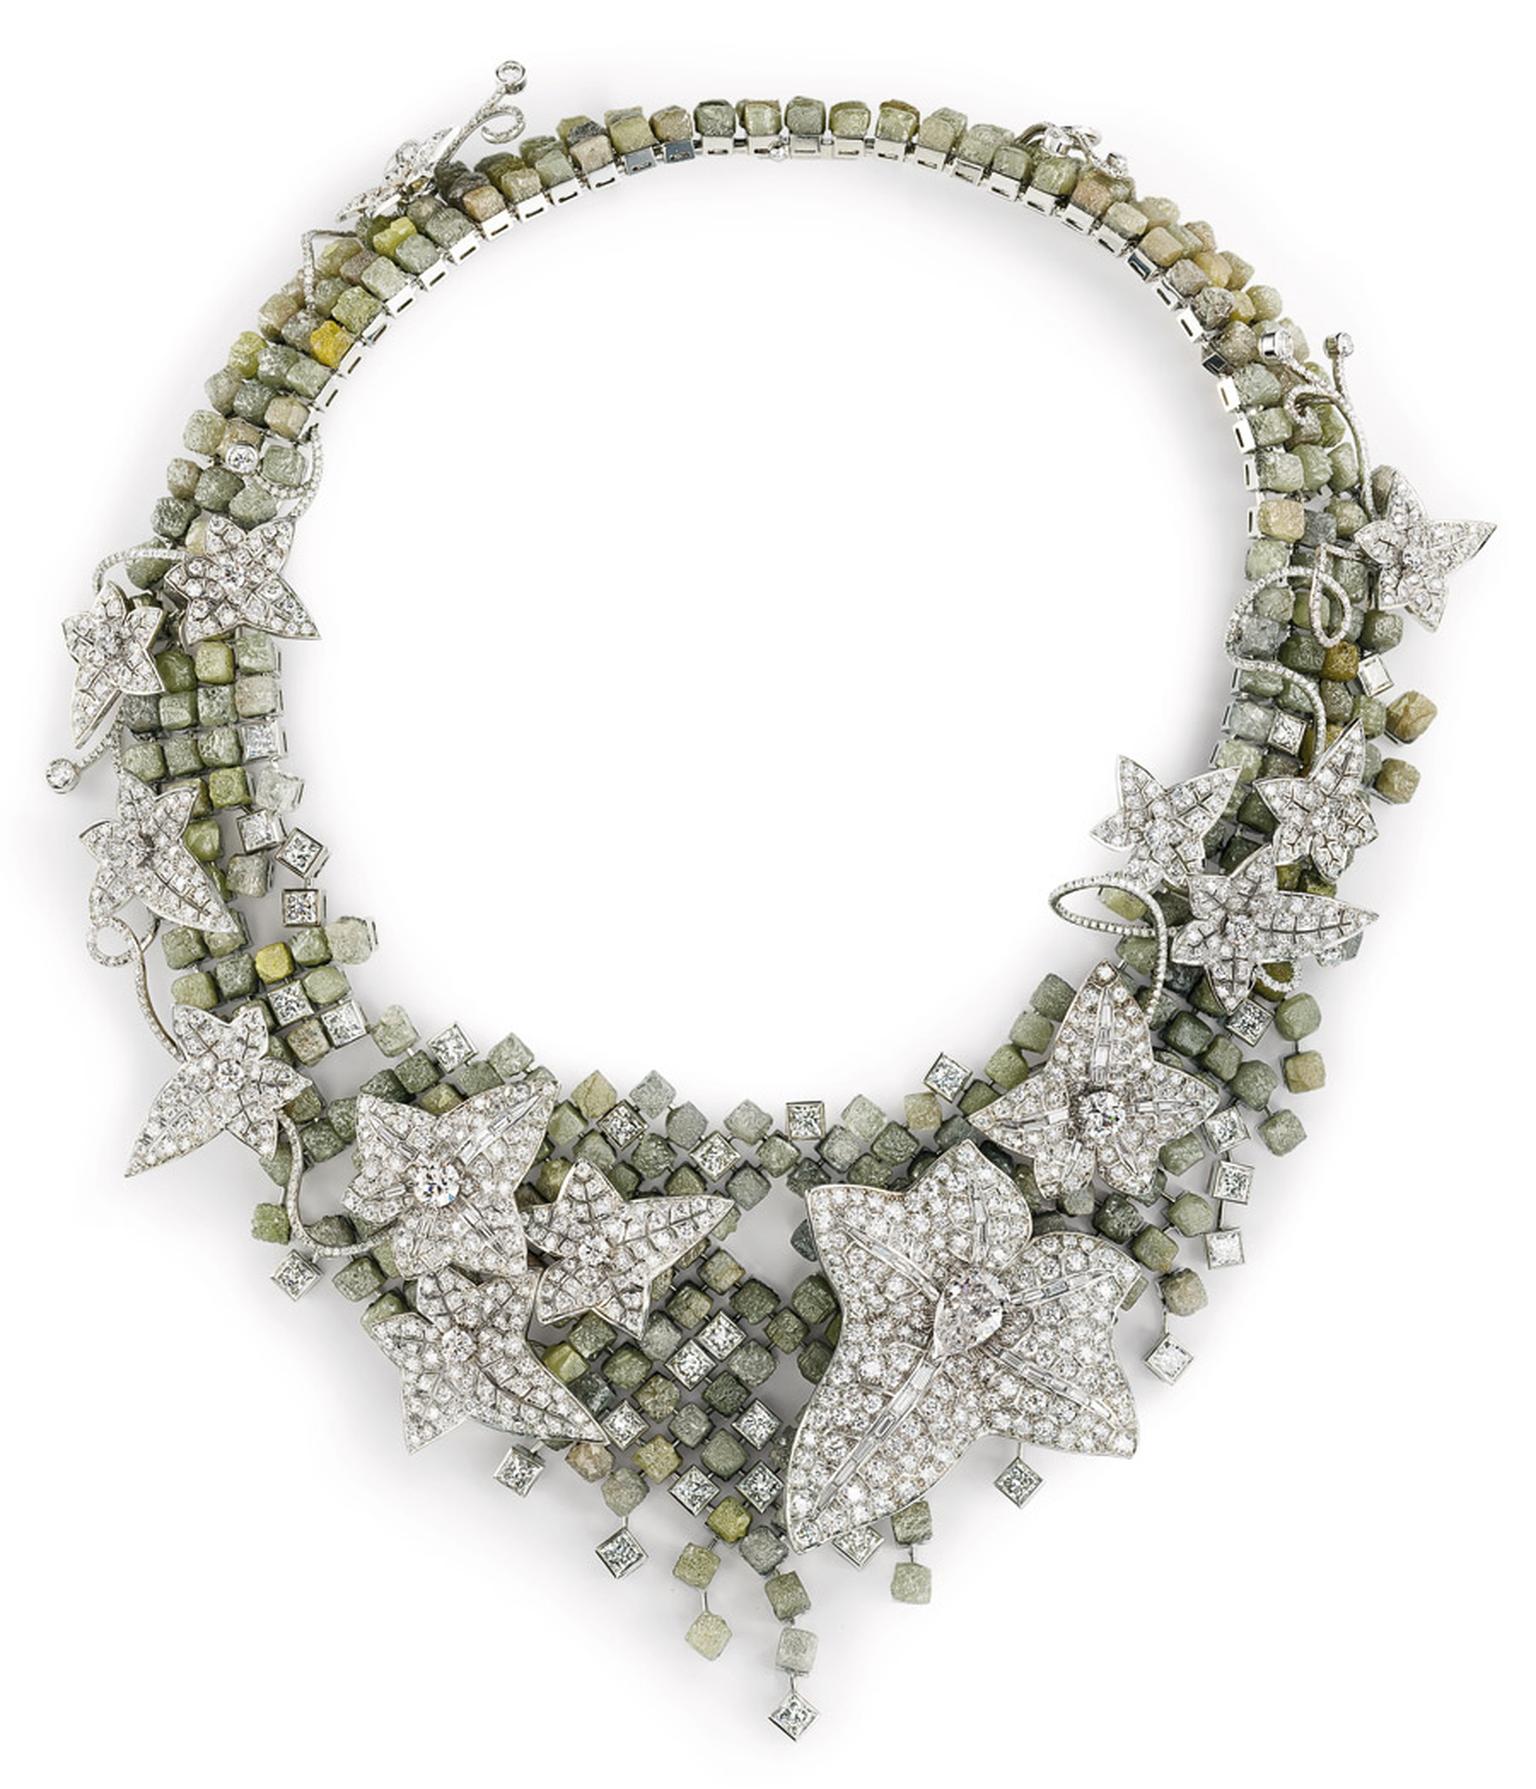 Boucheron Lierre de Paris rough and faceted diamond necklace, unveiled at the 2012 Biennale des Antiquaires